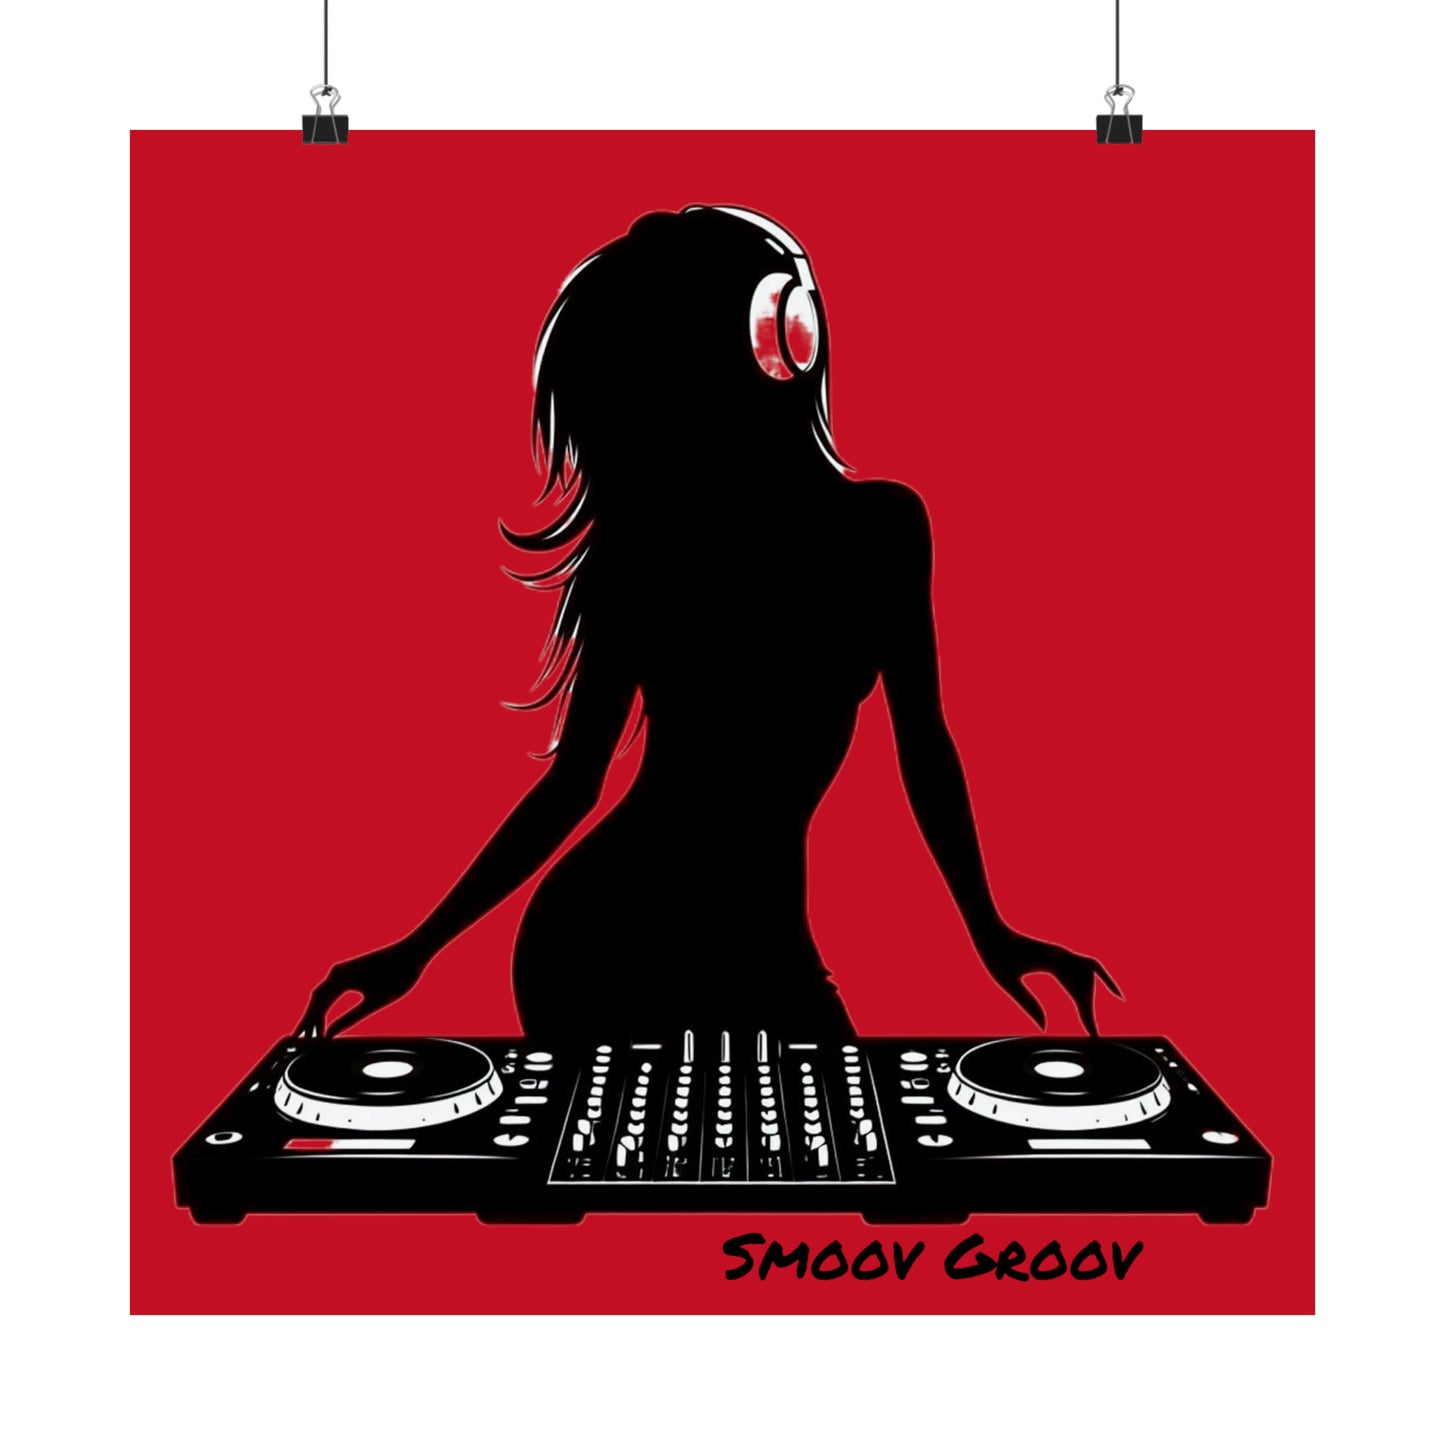 Smoov Girl Groov DJ in red